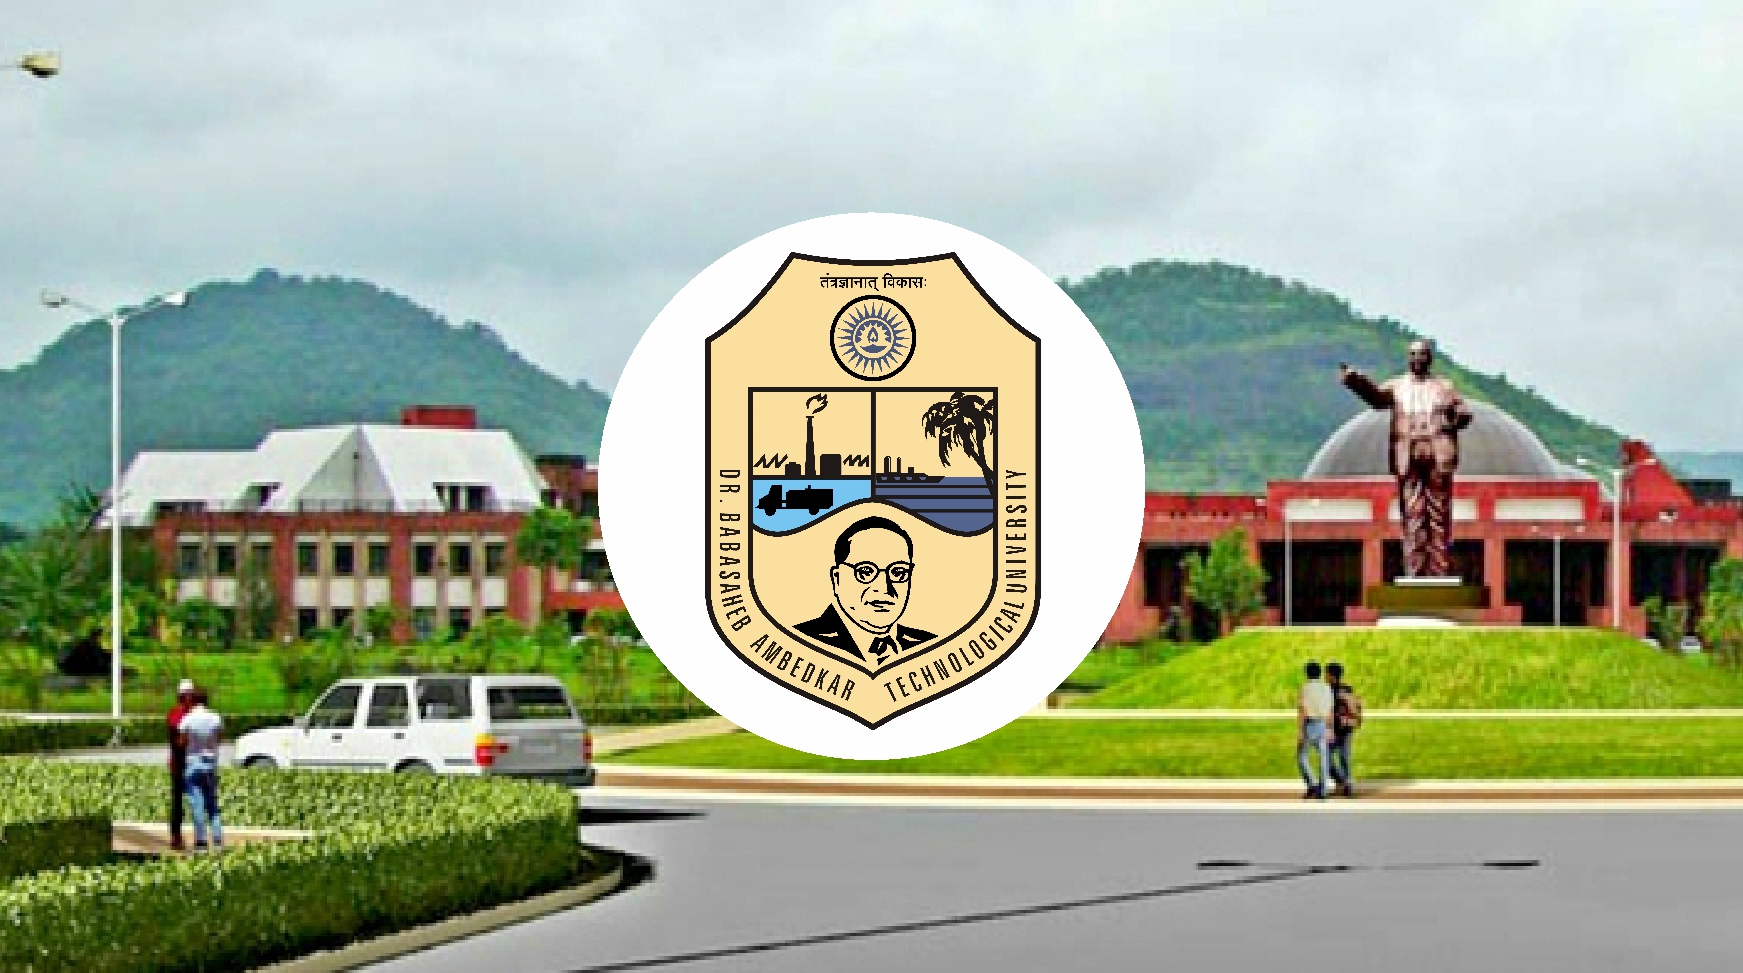 Dr. Babasaheb Ambedkar Technological University, Lonere